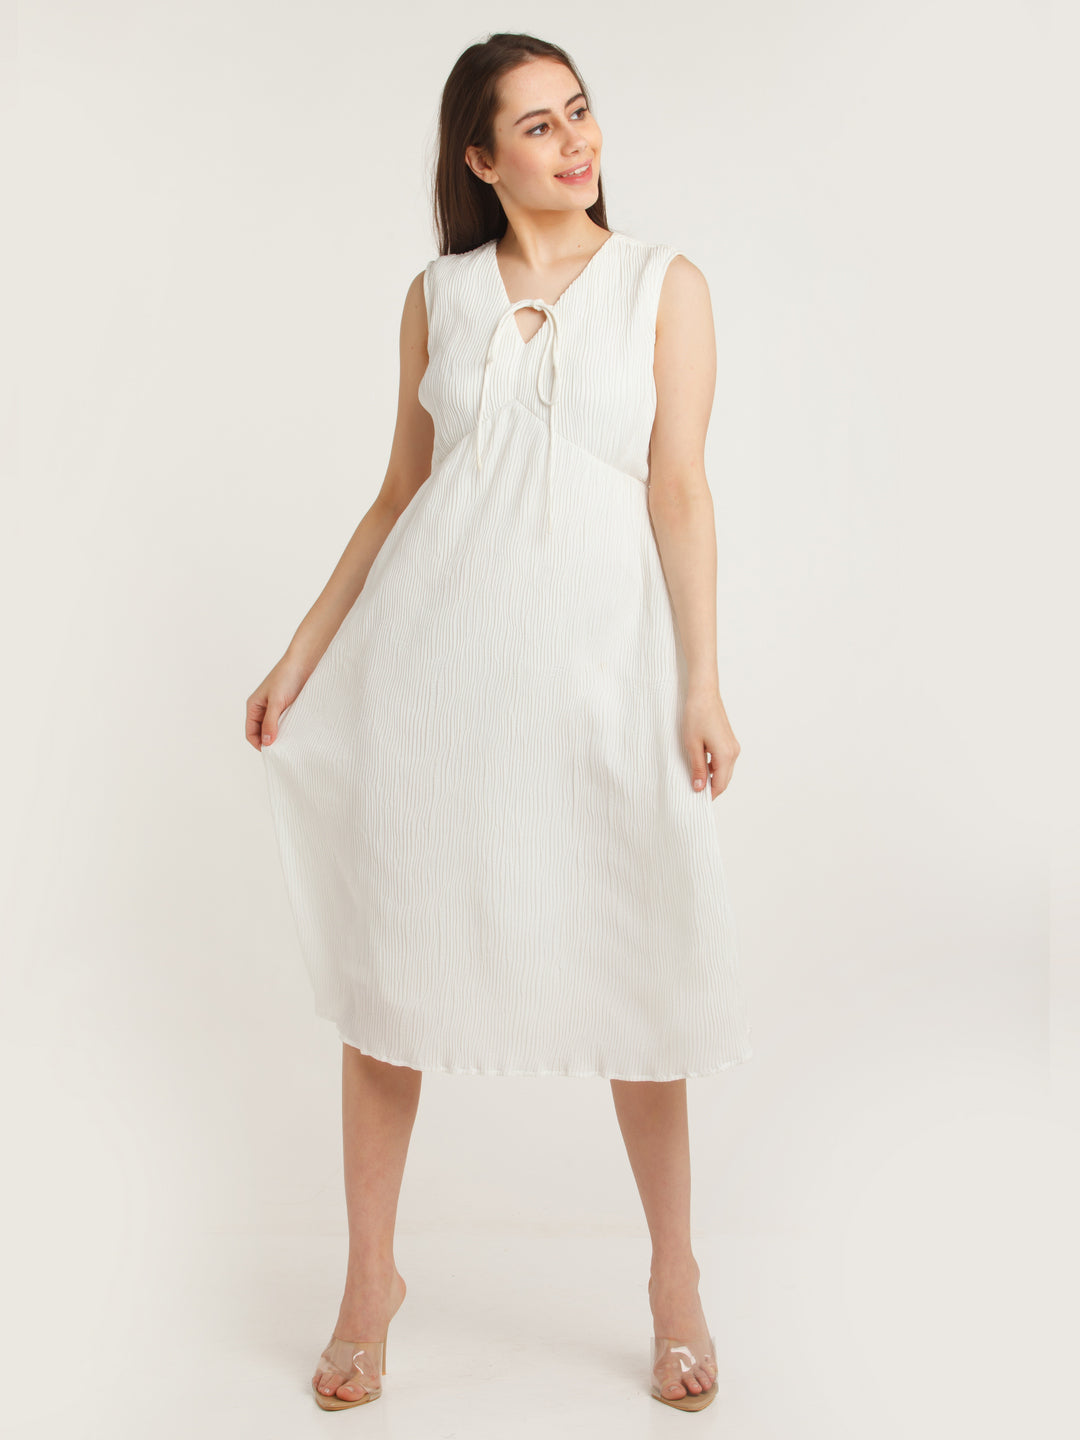 White Solid Empire Midi Dress For Women